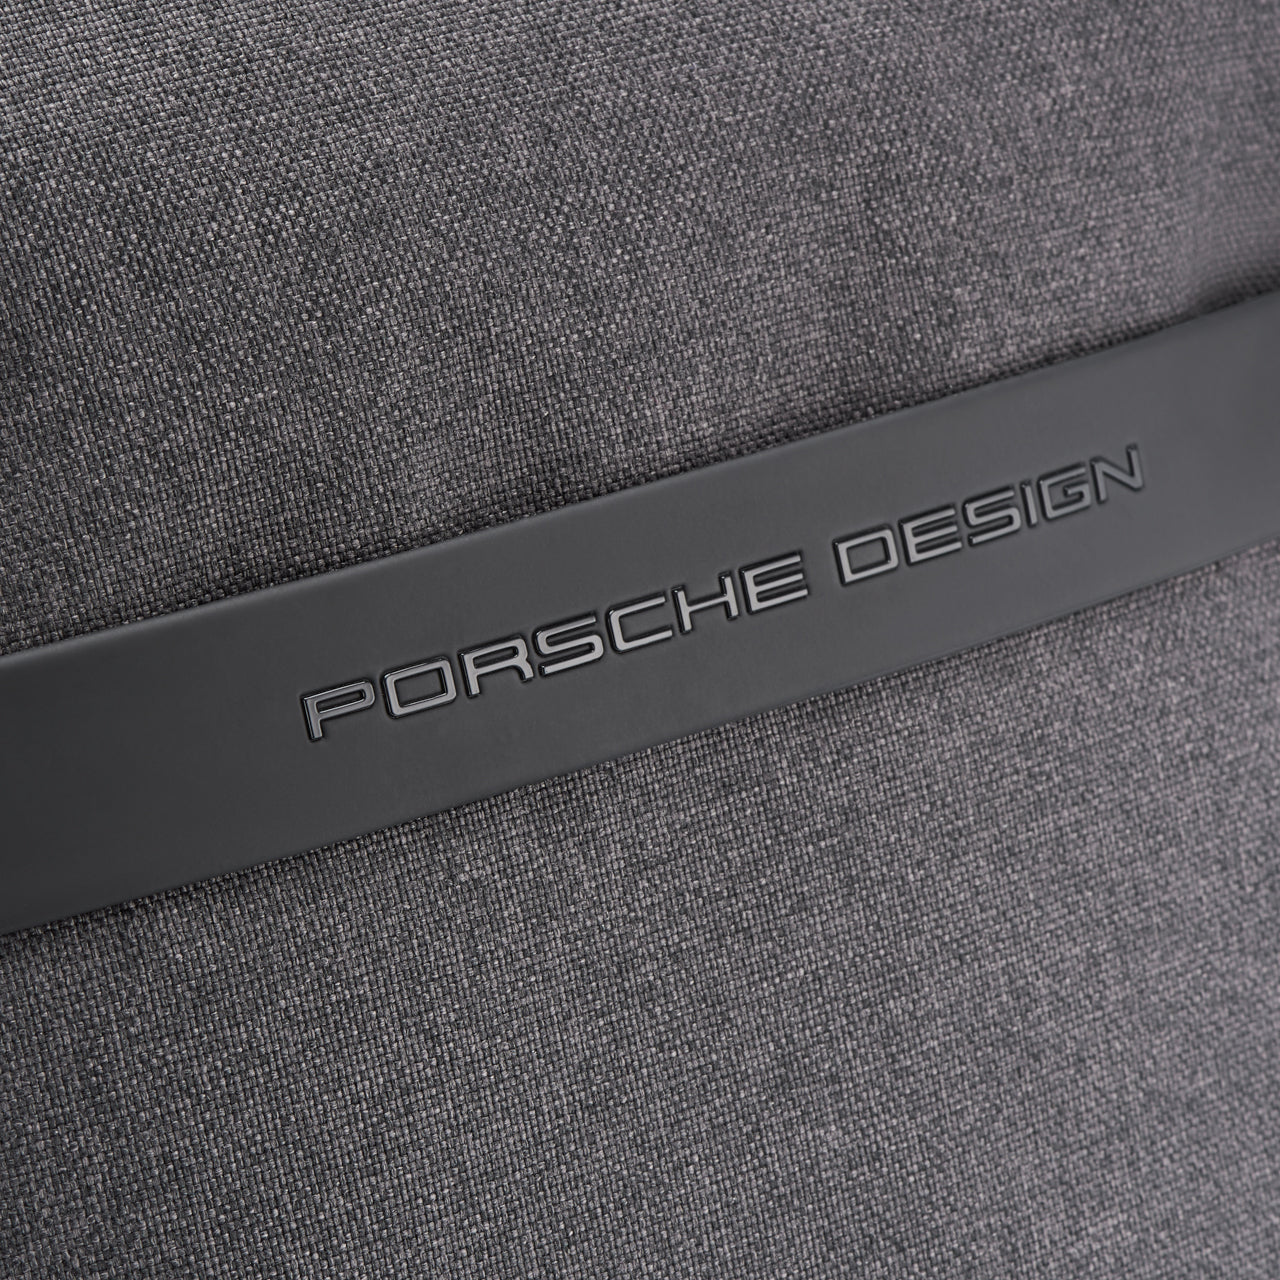 Mochila Porsche Design Cargon 3.0 LVZ1 